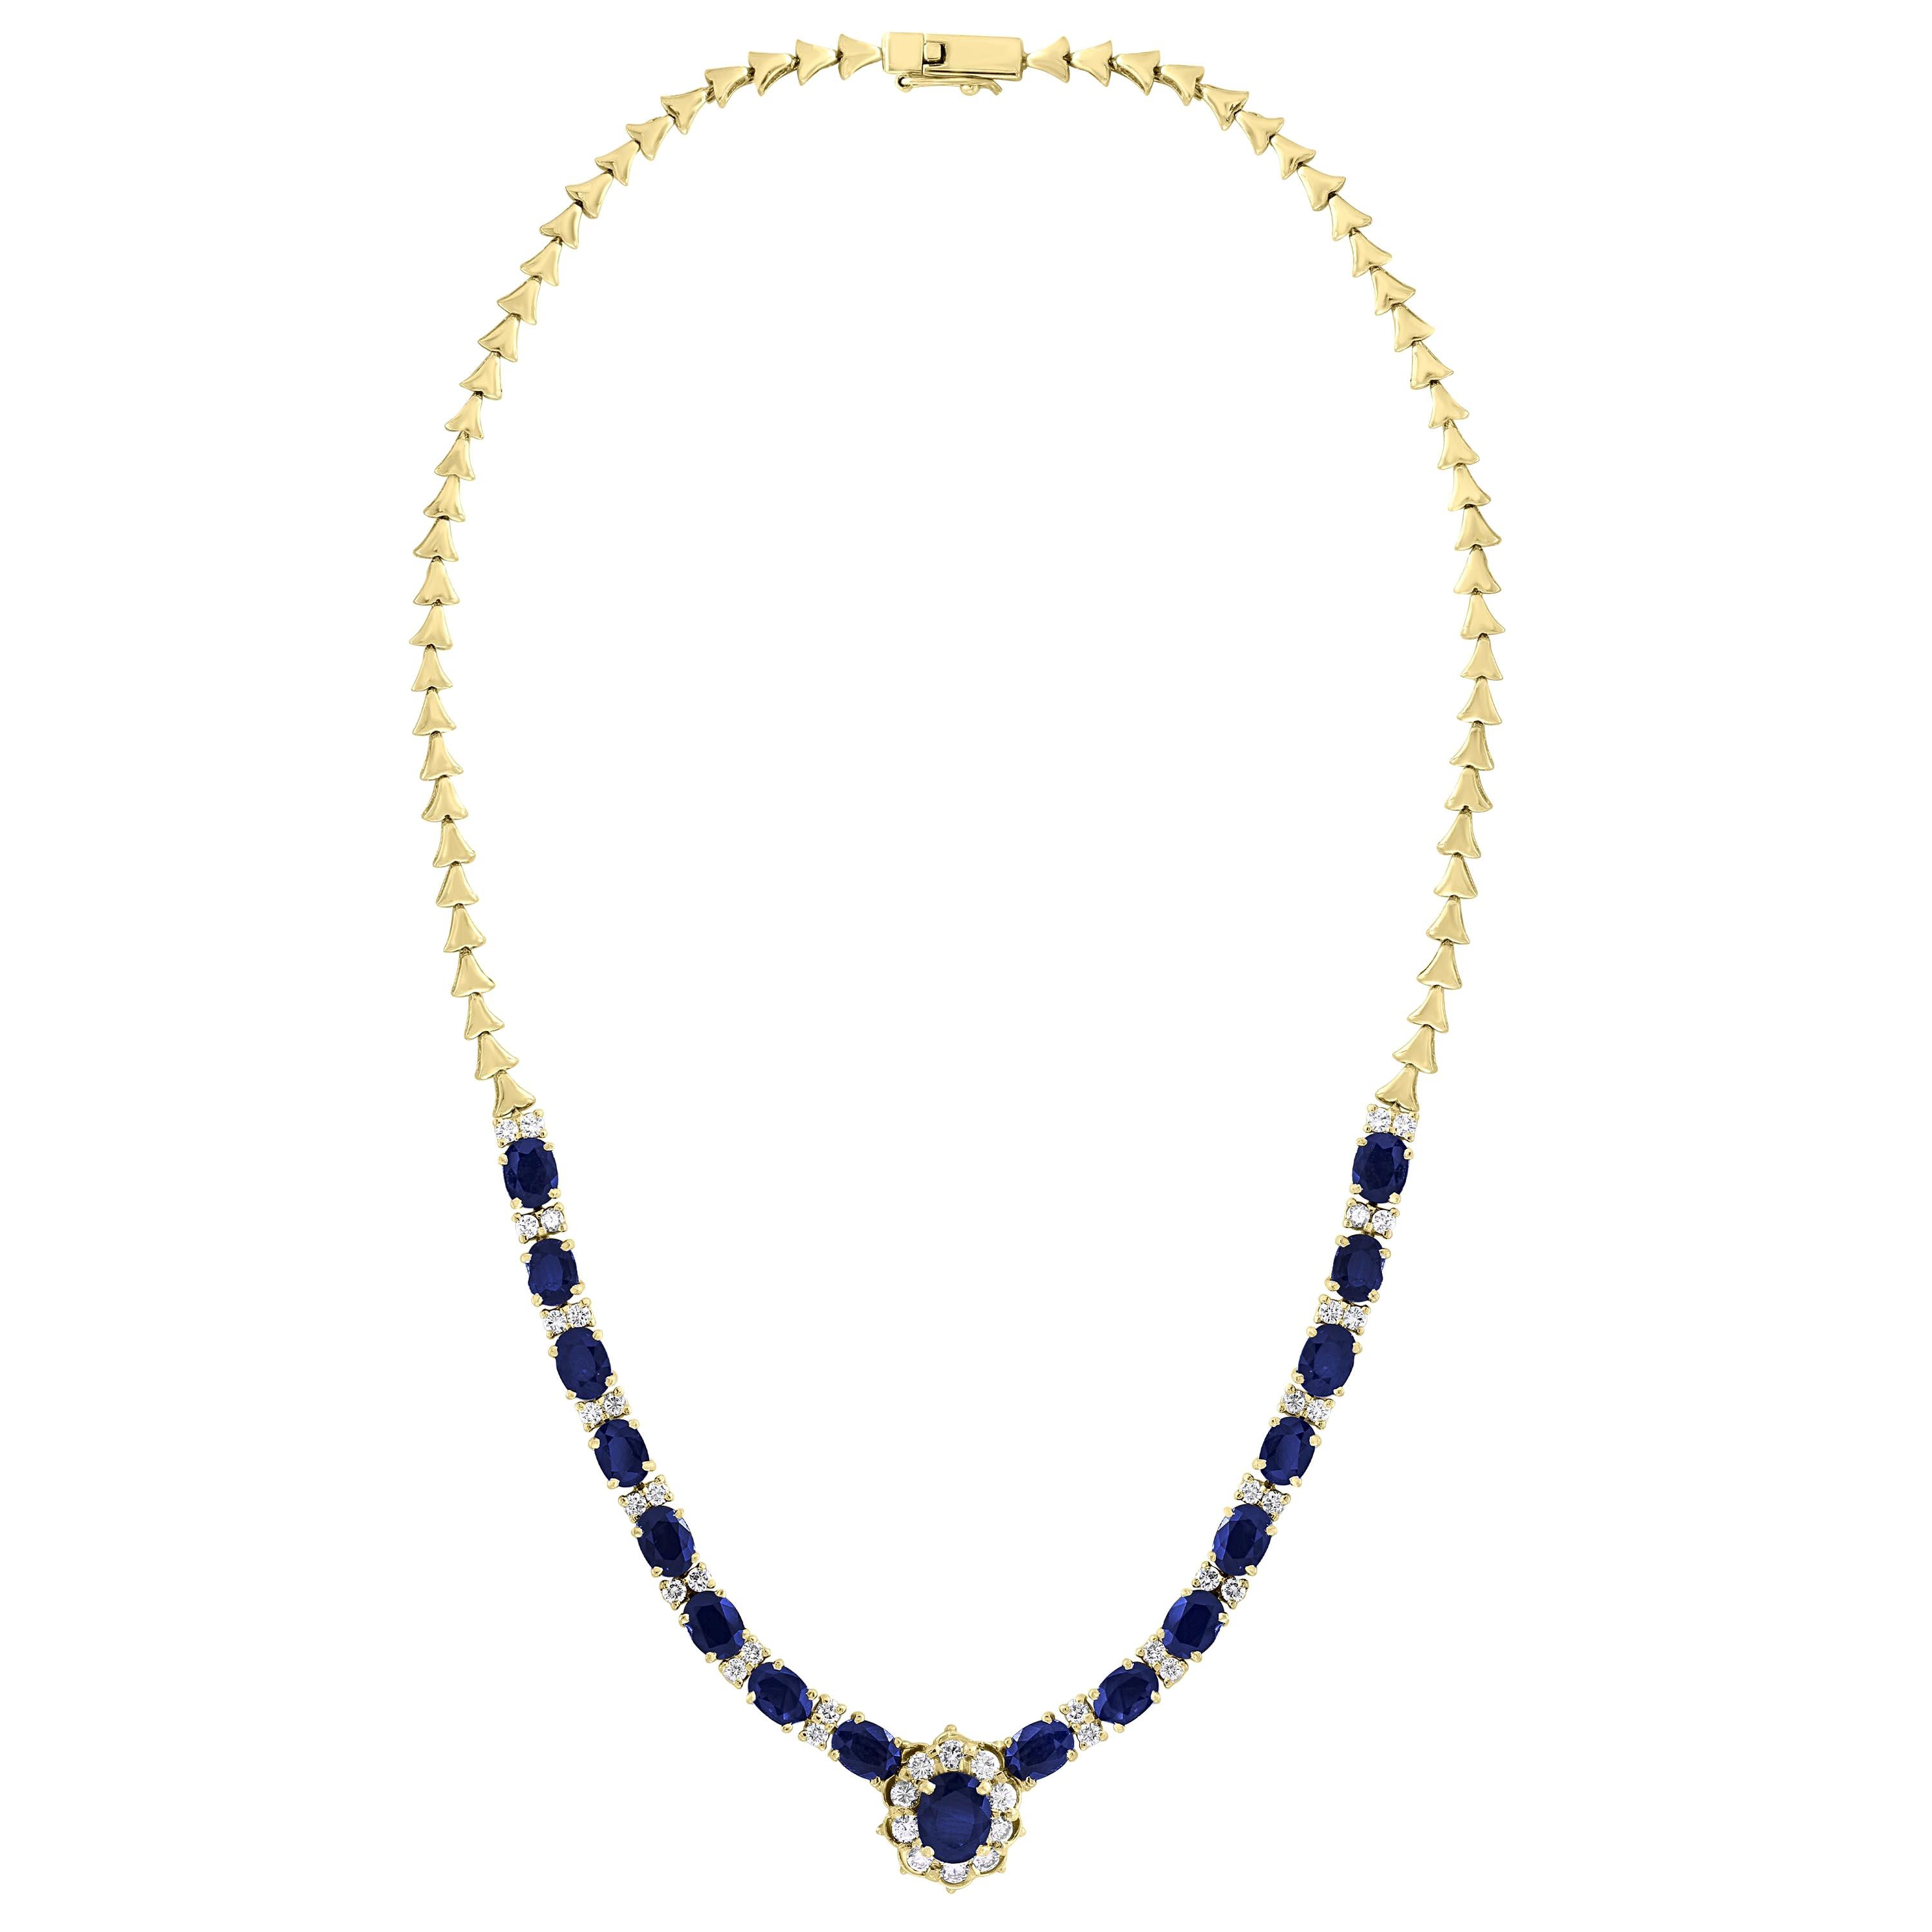 17 Carat Oval Sapphire and 3.5 Carat Diamonds Necklace 18 Karat Yellow Gold